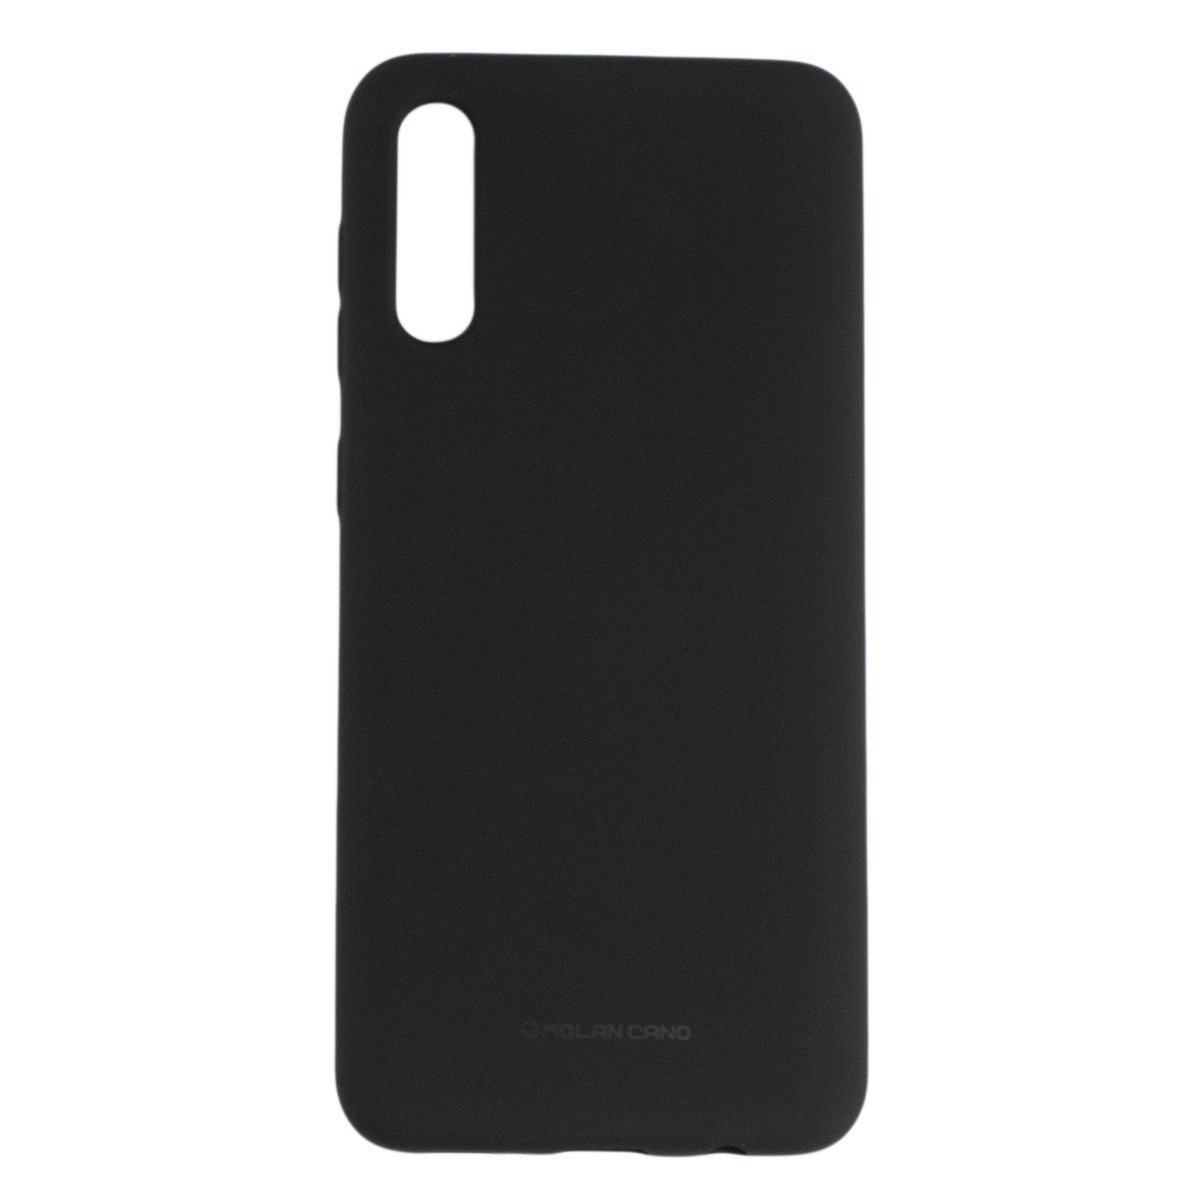 Оригінальний силіконовий чохол Molan Cano Jelly Case для Samsung Galaxy A50 (SM-A505) (чорний)